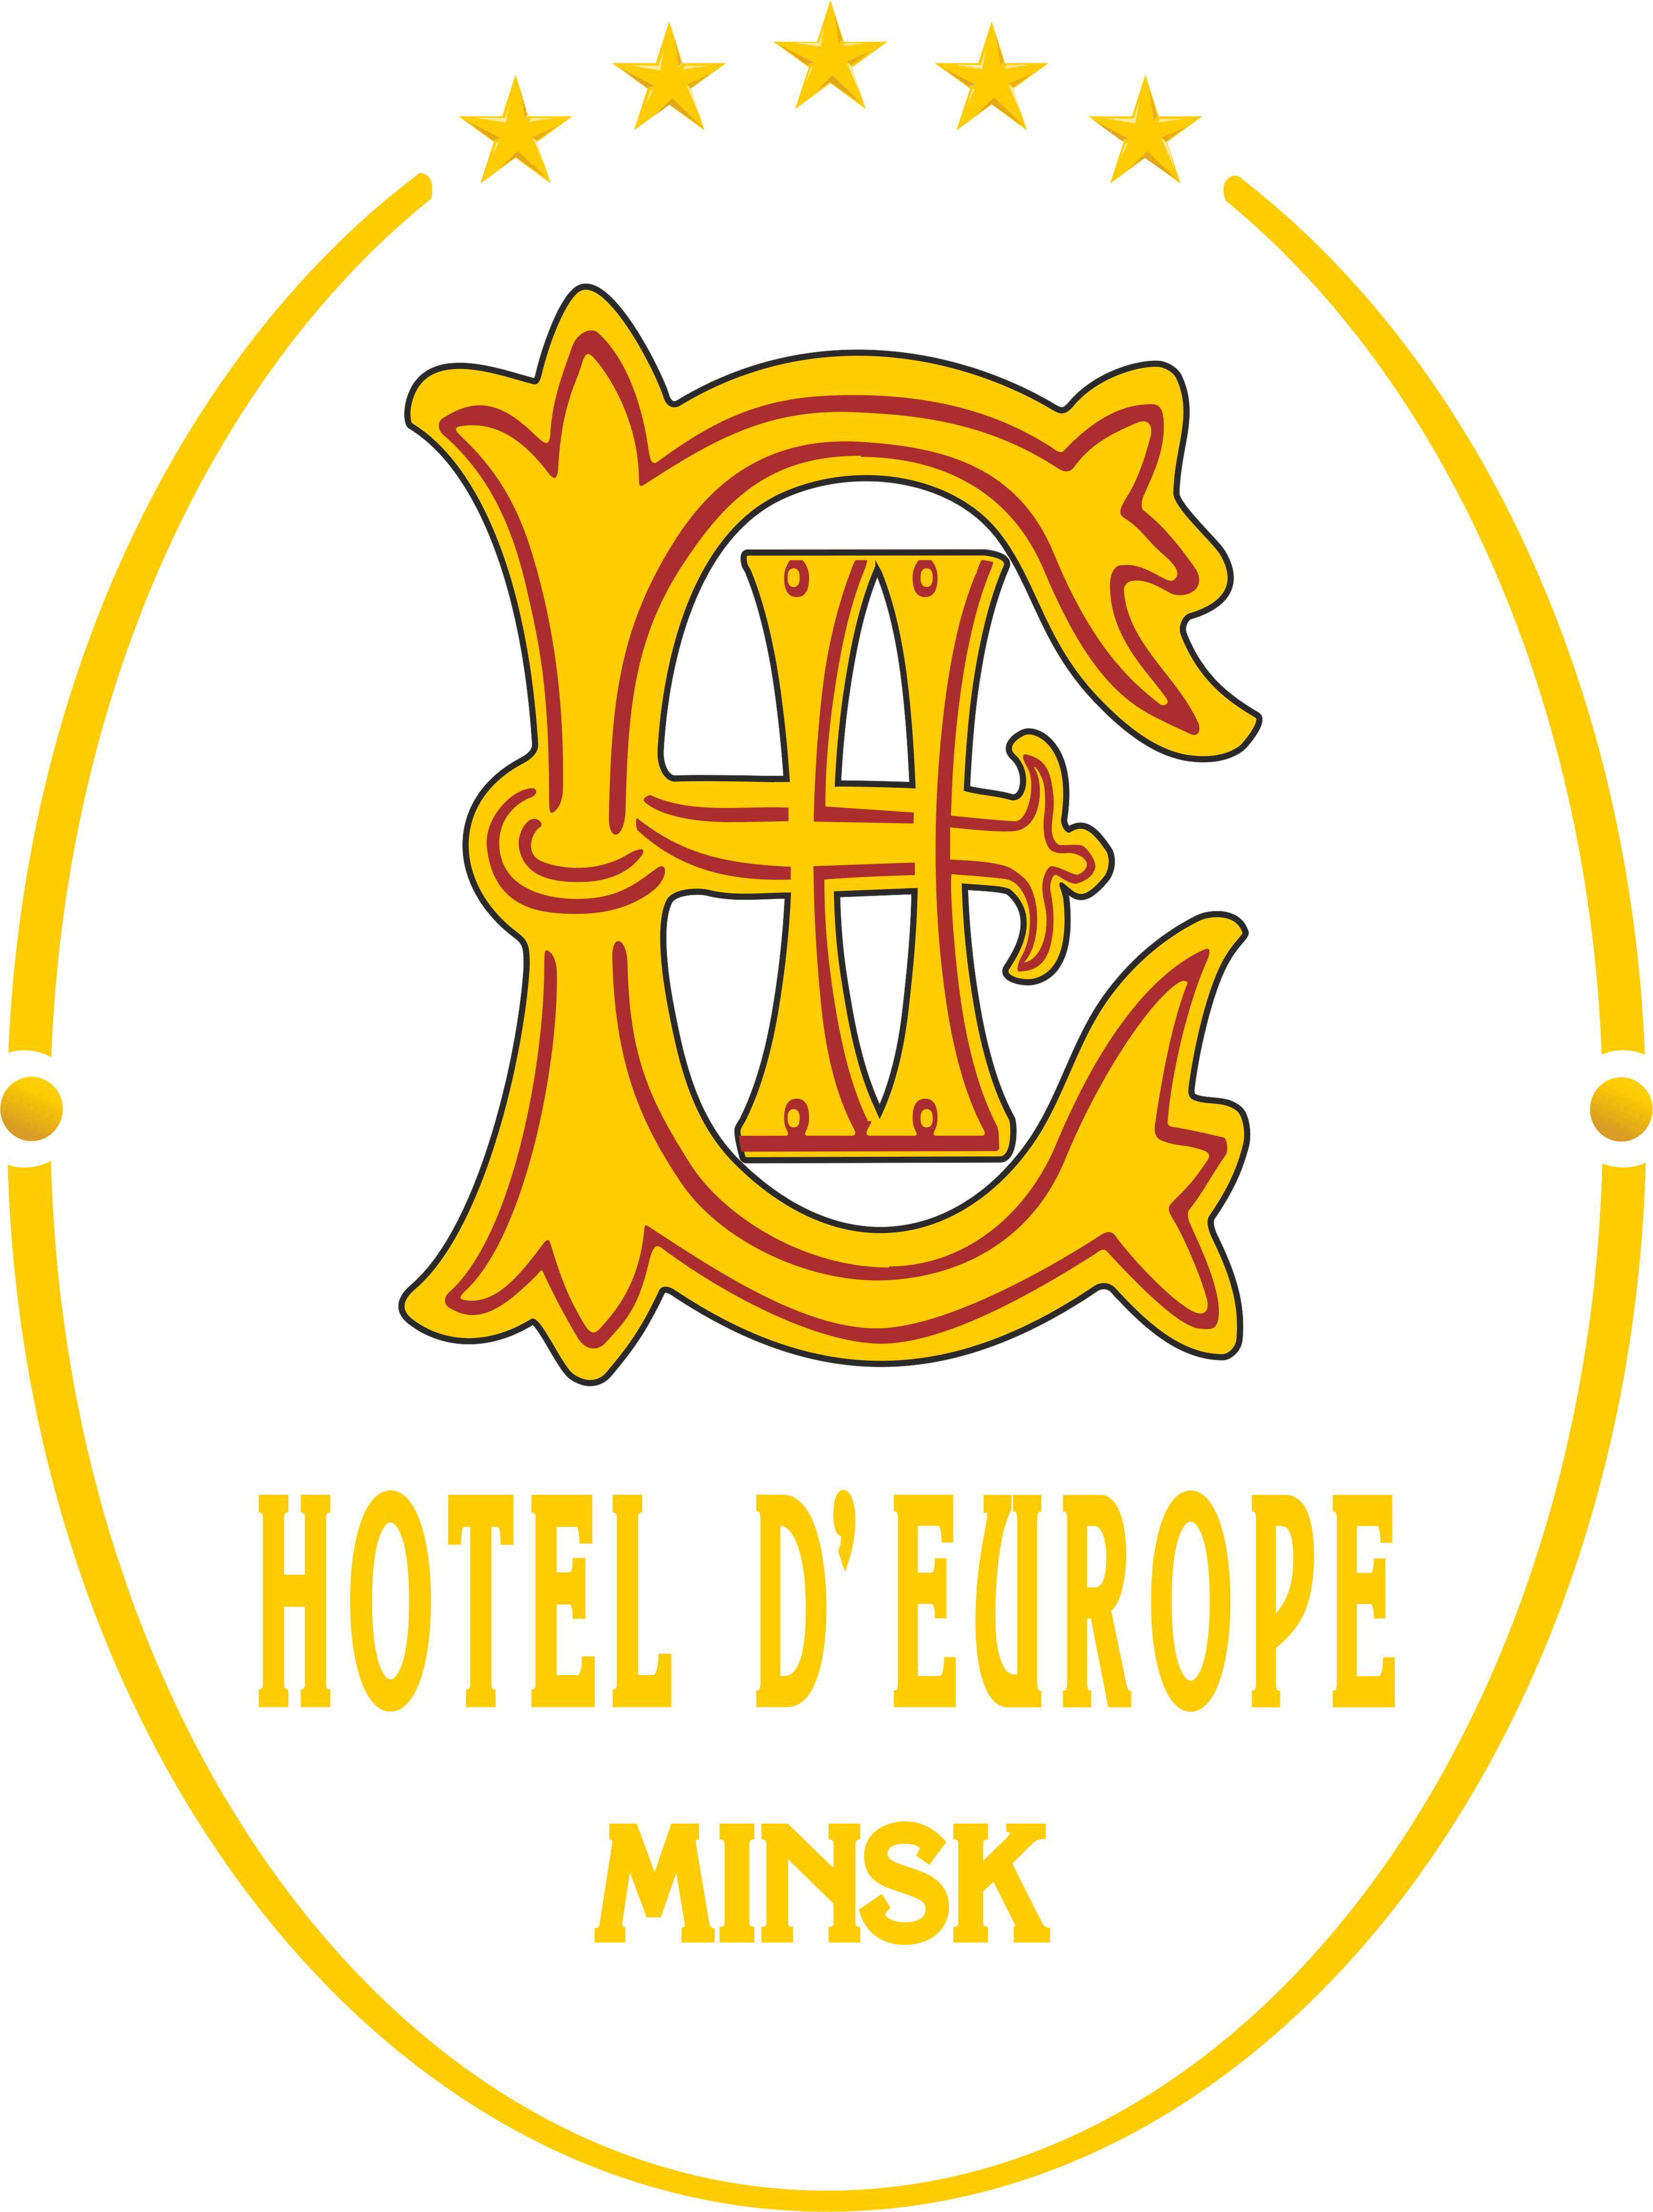 Отель «Европа» - официальный сайт 5 звездочной гостиницы в центре Минска